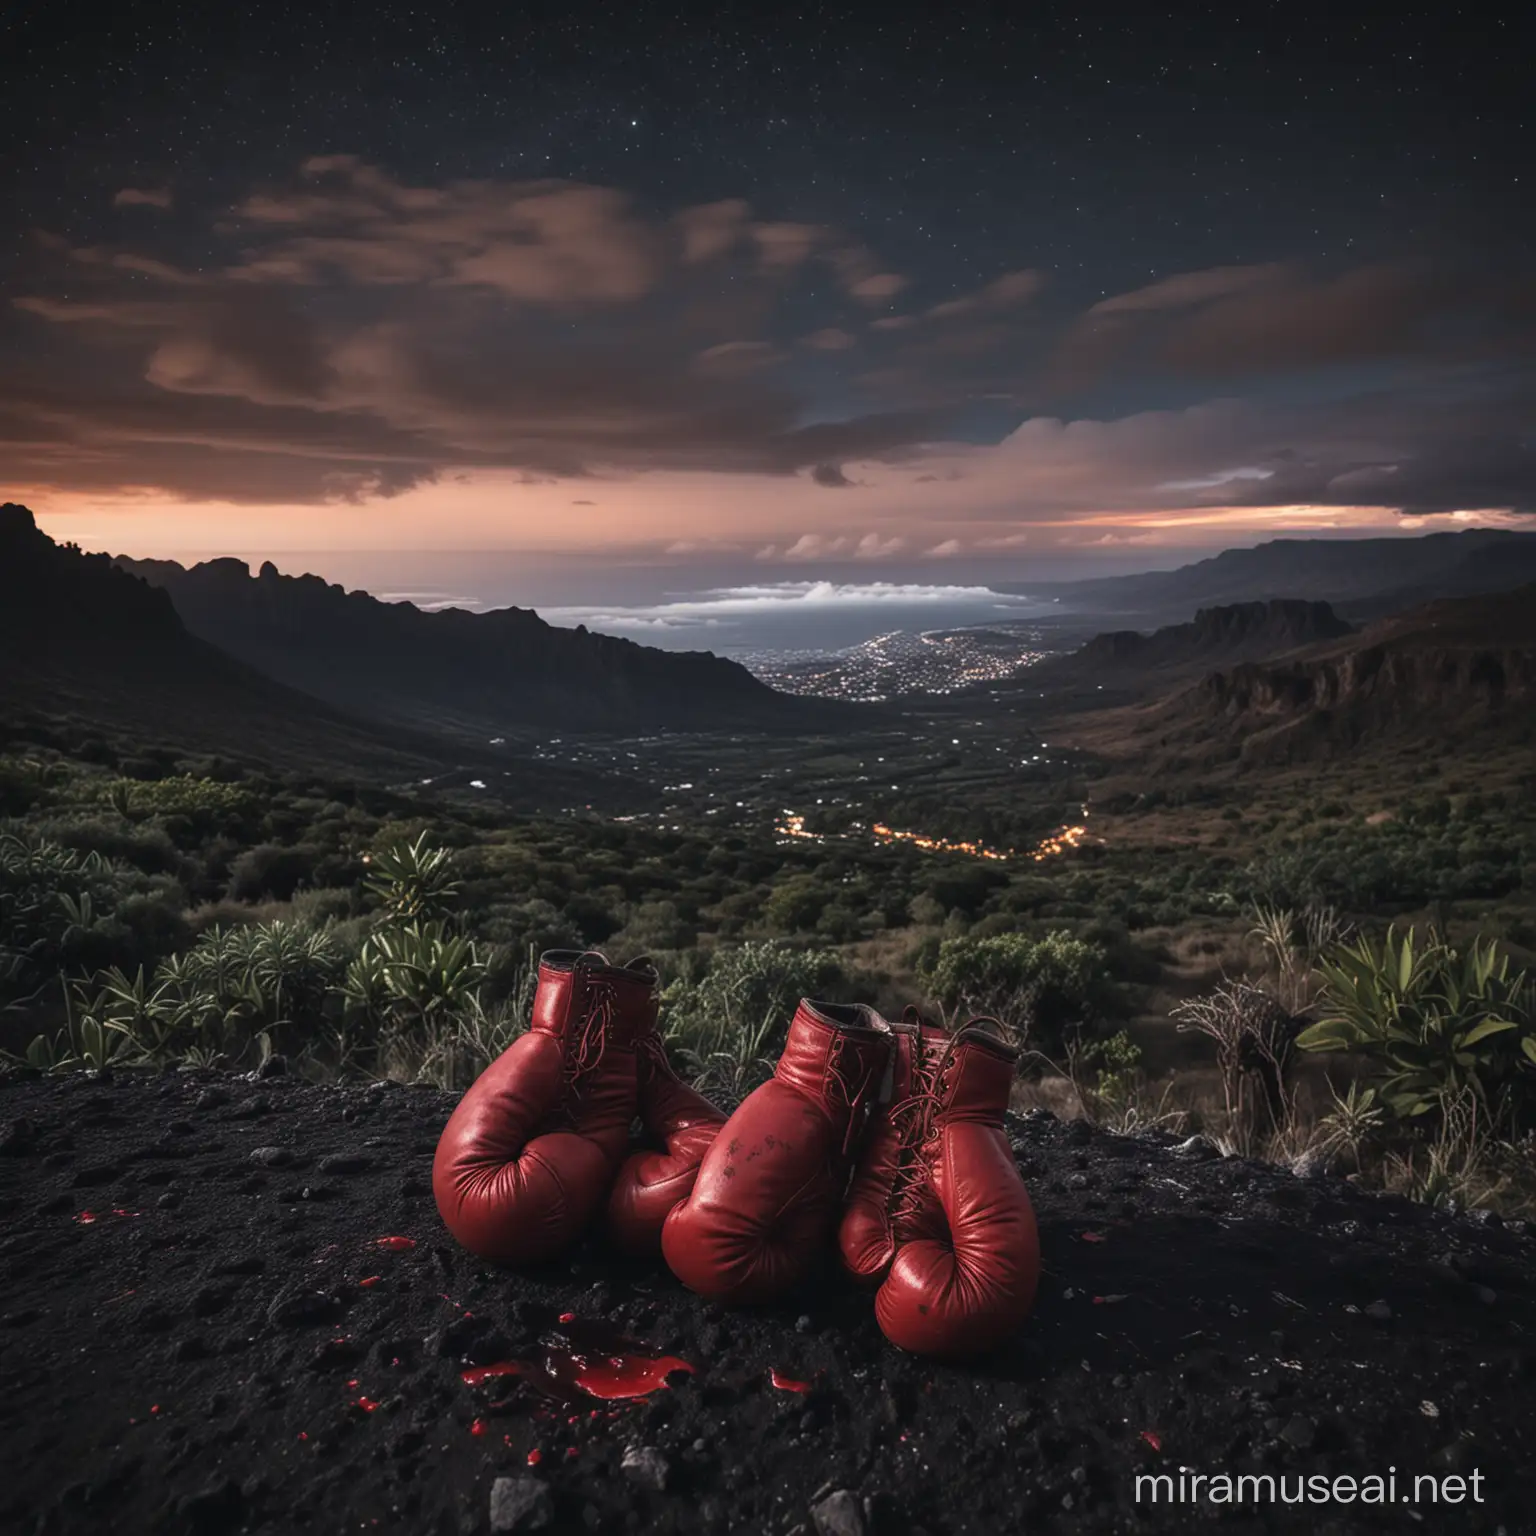 Paysage de l'ile de Réunion de nuit avec une ambiance froide, avec des anciens gants de boxe recouverts de sang